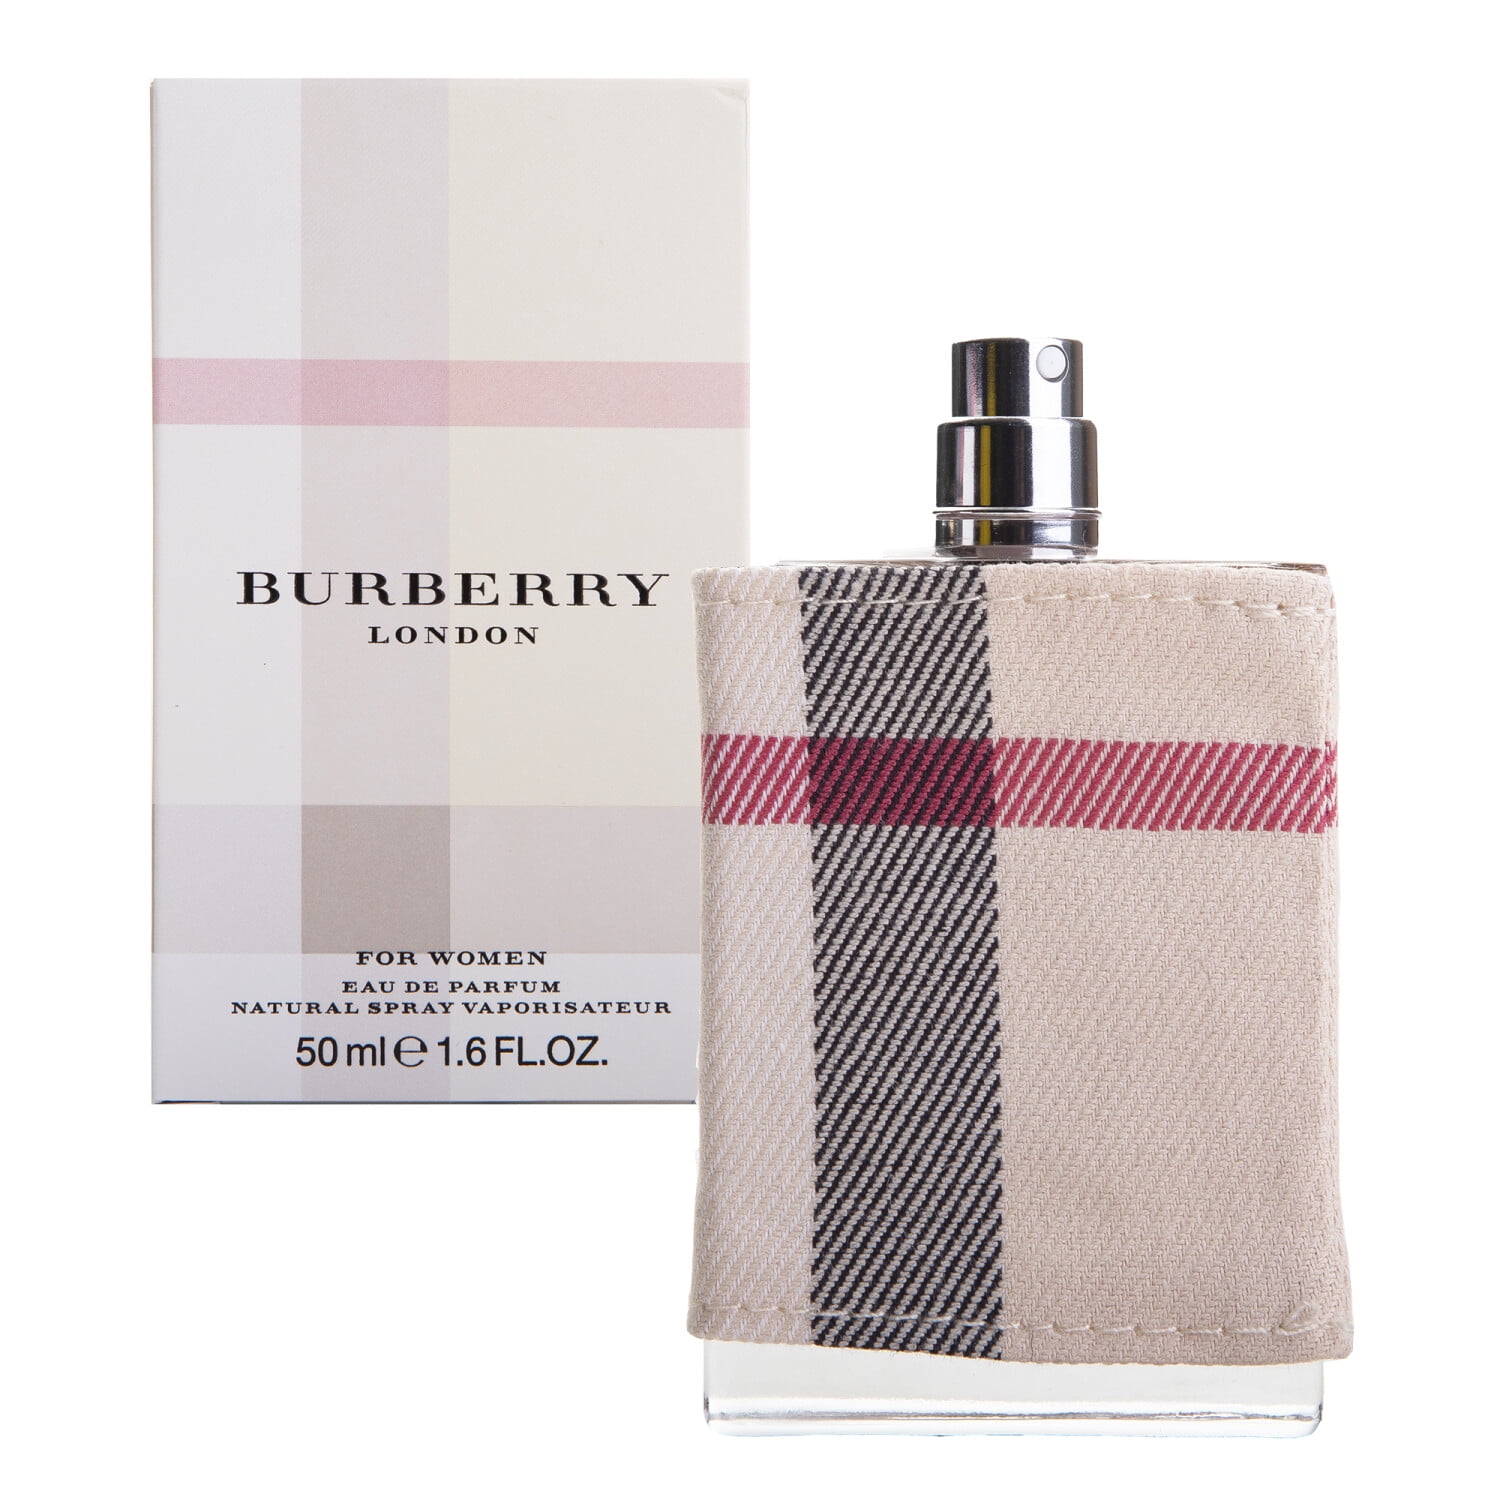 Burberry - Burberry London Eau de Parfum Spray for Women - 1.6 oz